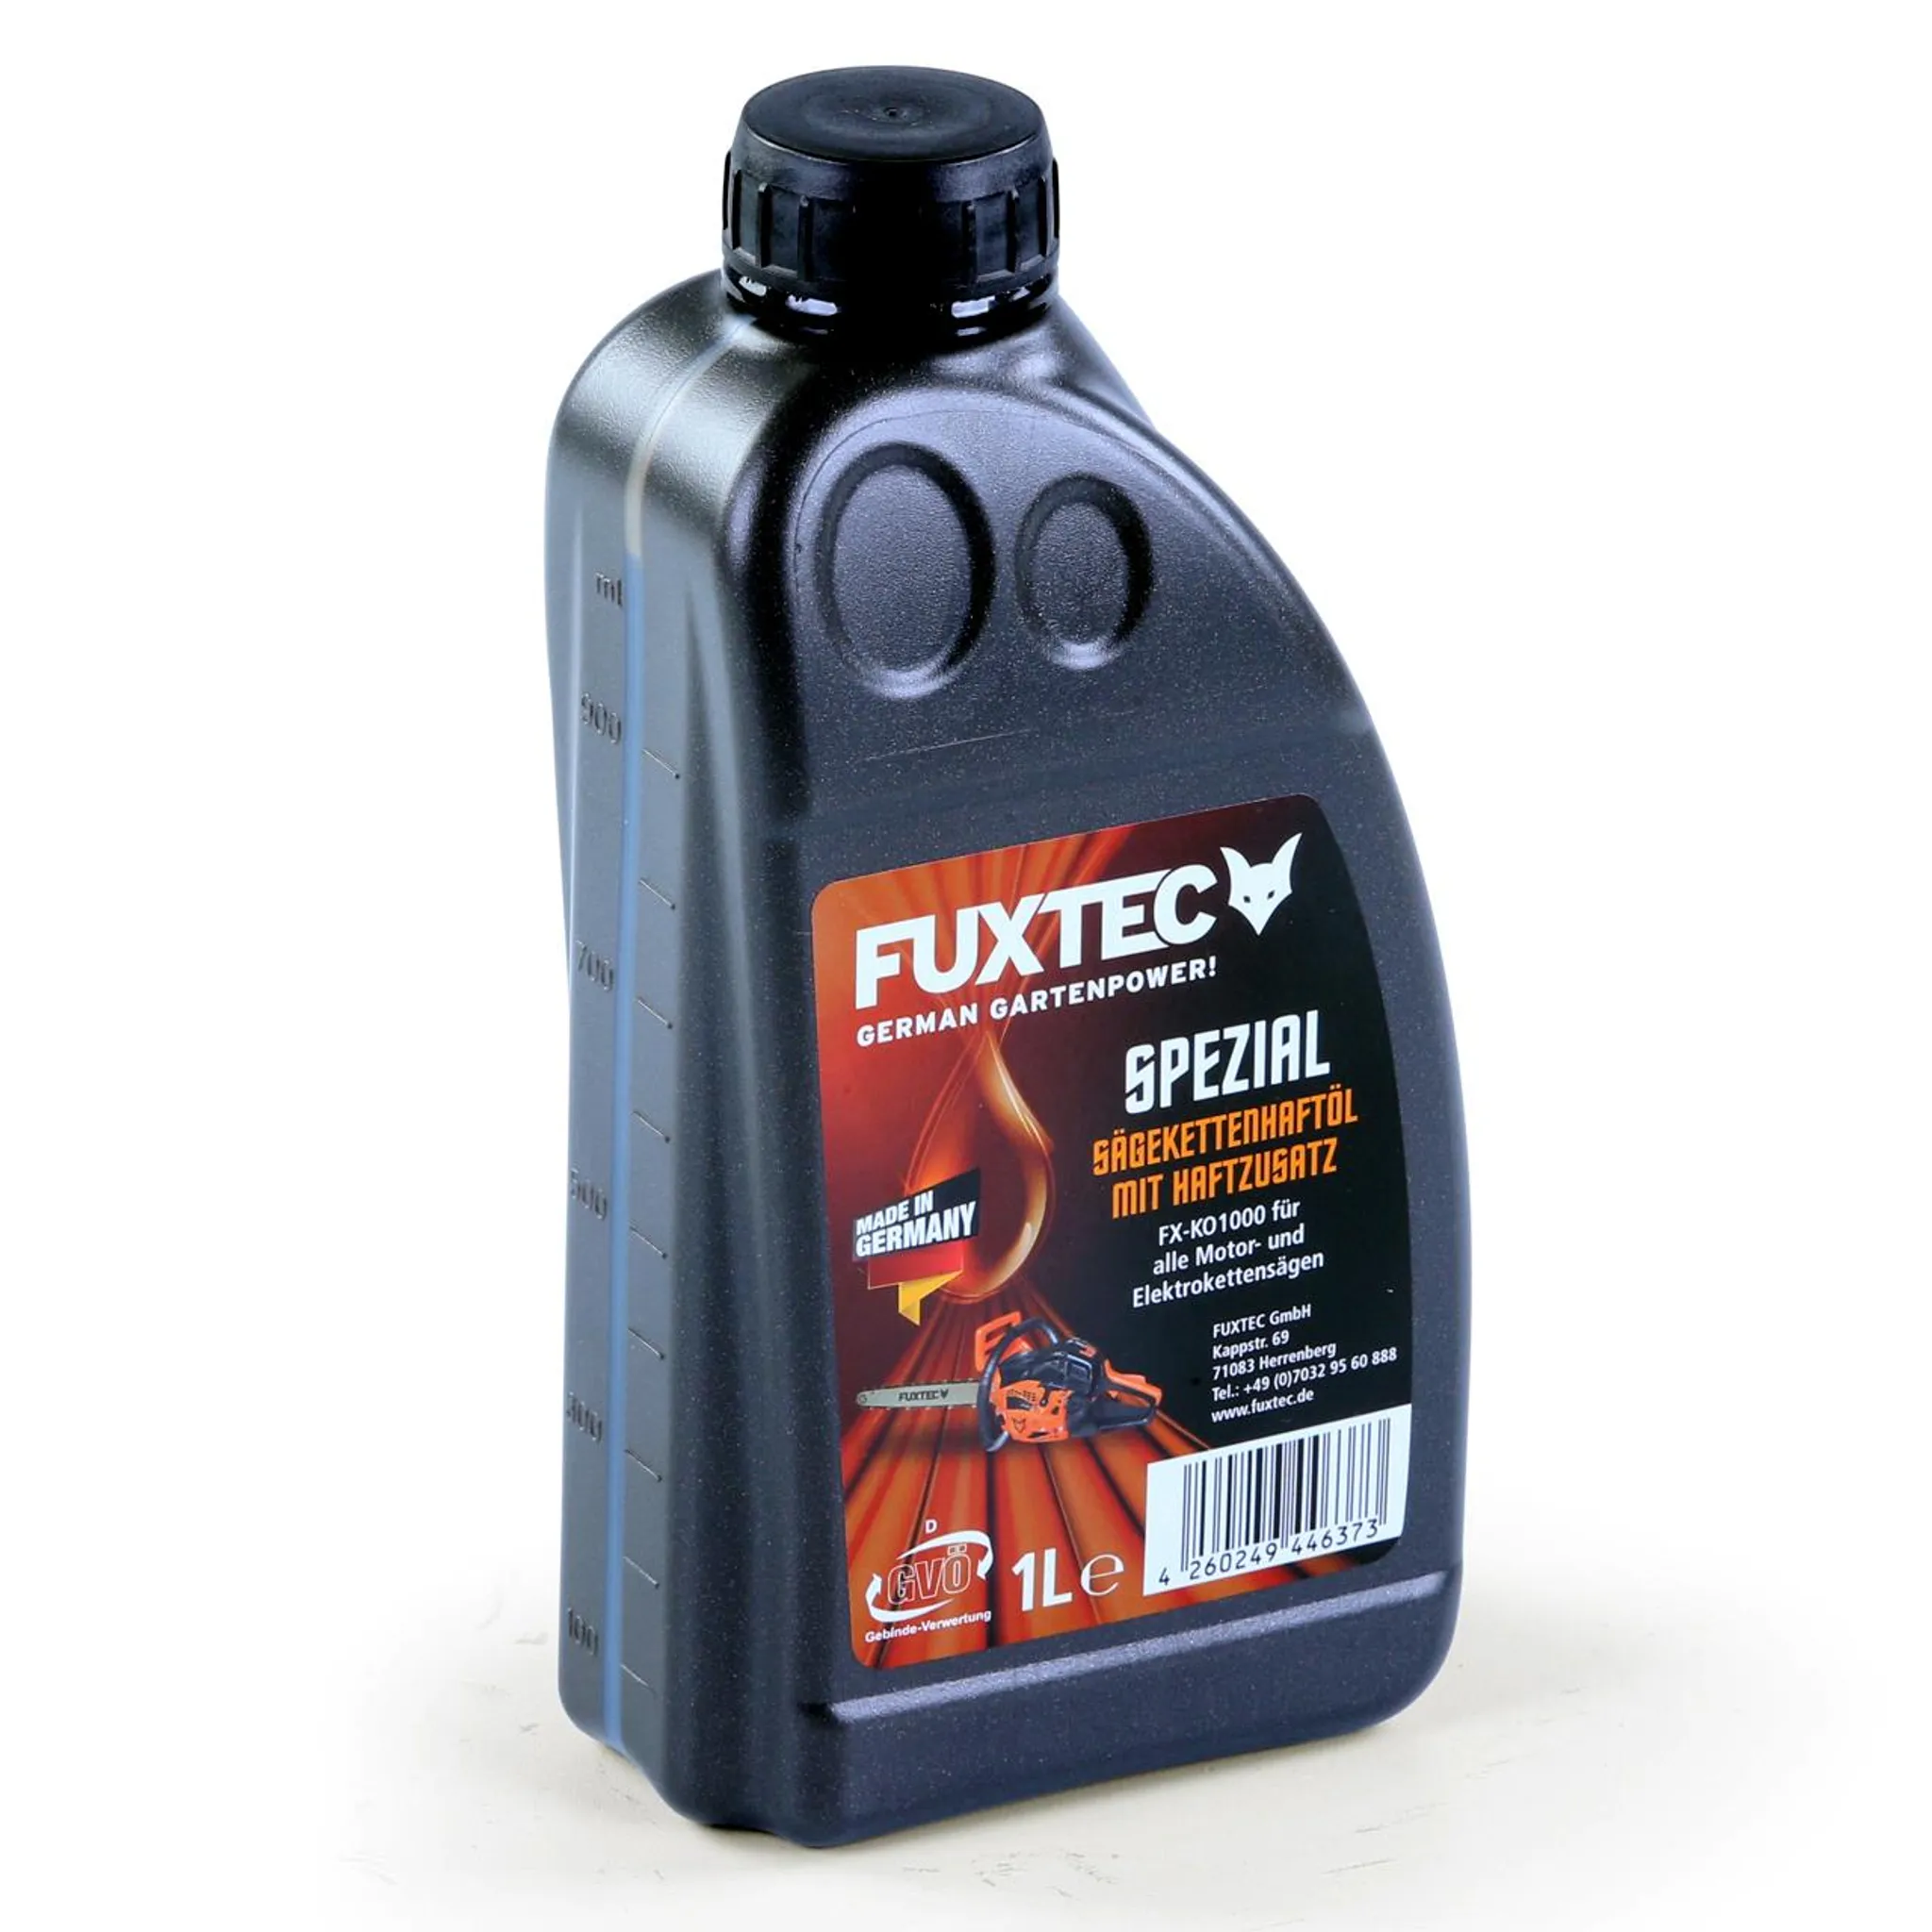 FUXTEC Sägekettenhaftöl mit Haftzusatz